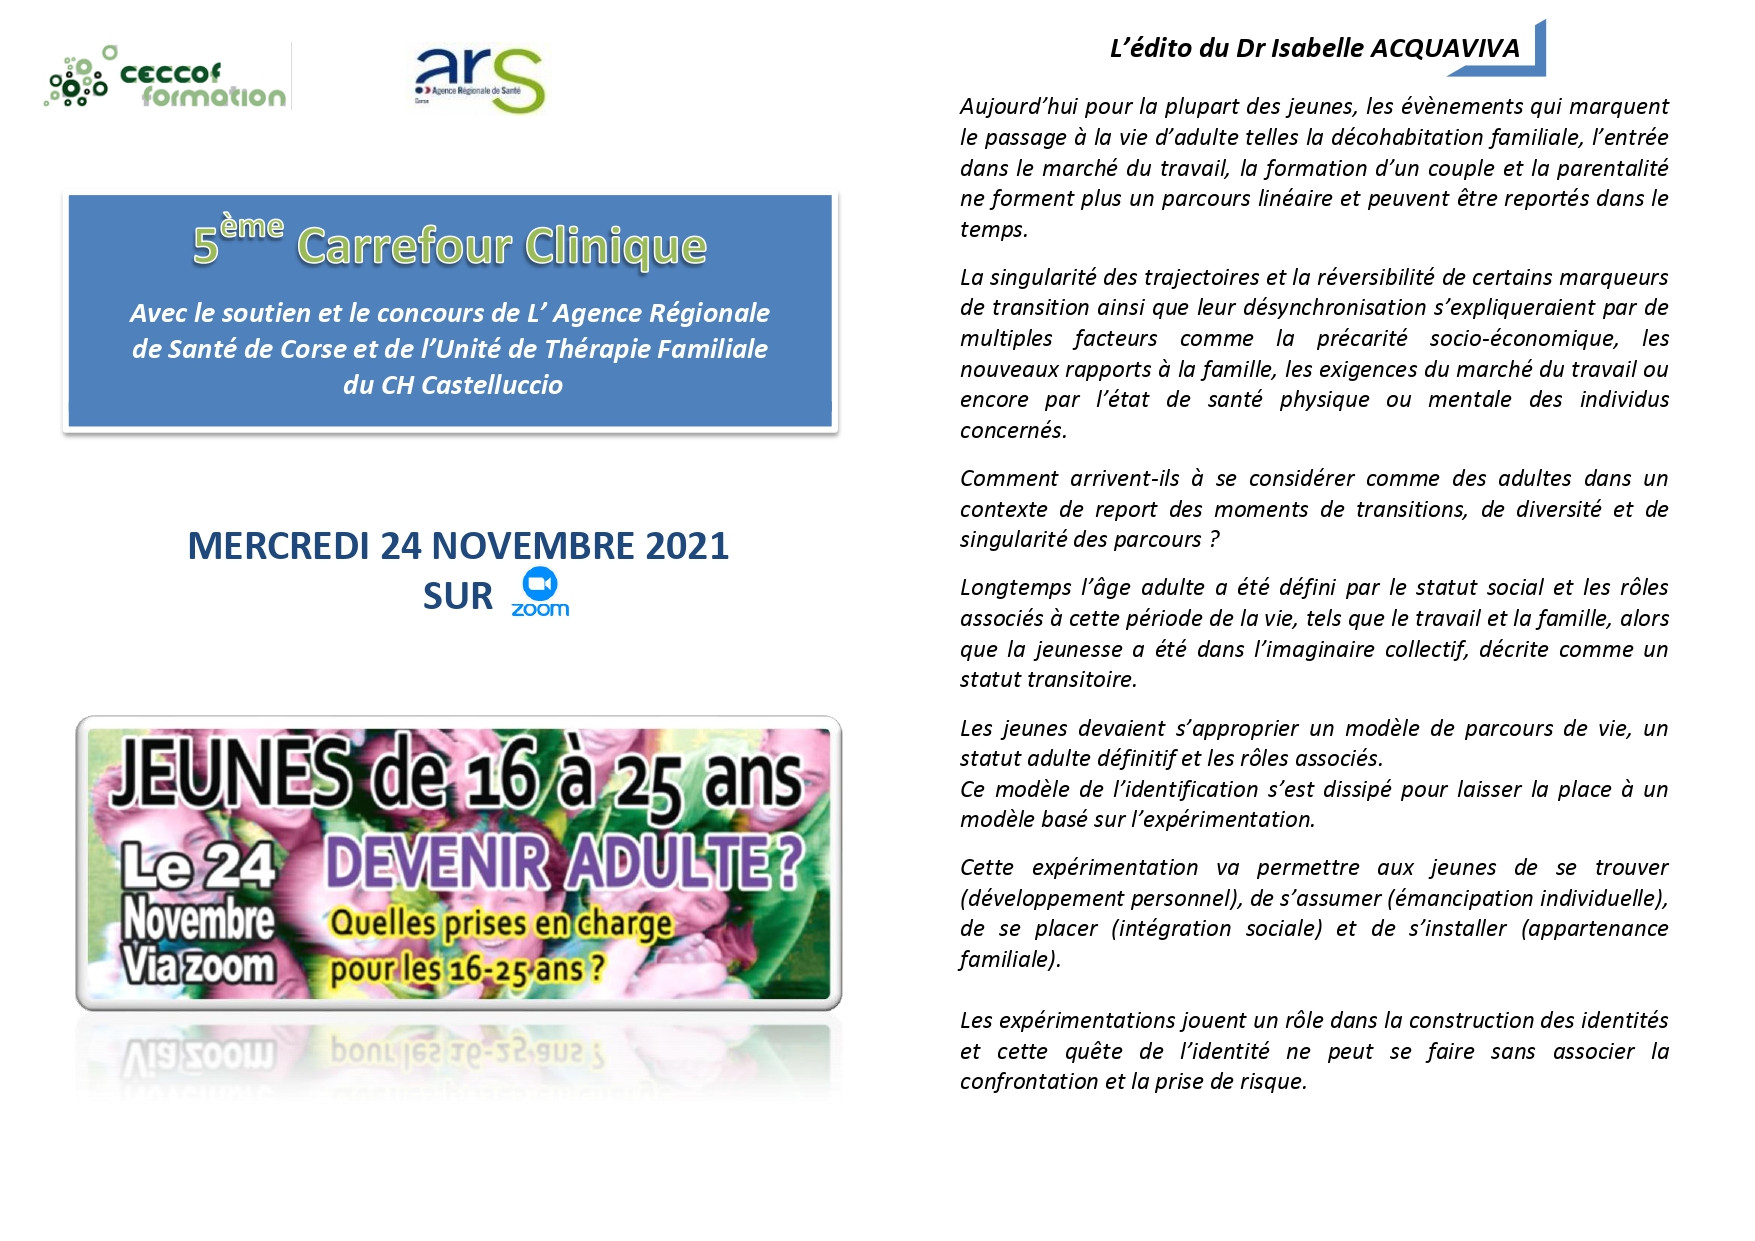 5ème Carrefour Clinique Ceccof : Jeunes de 16 à 25 ans : Edito du Dr ACQUAVIVA